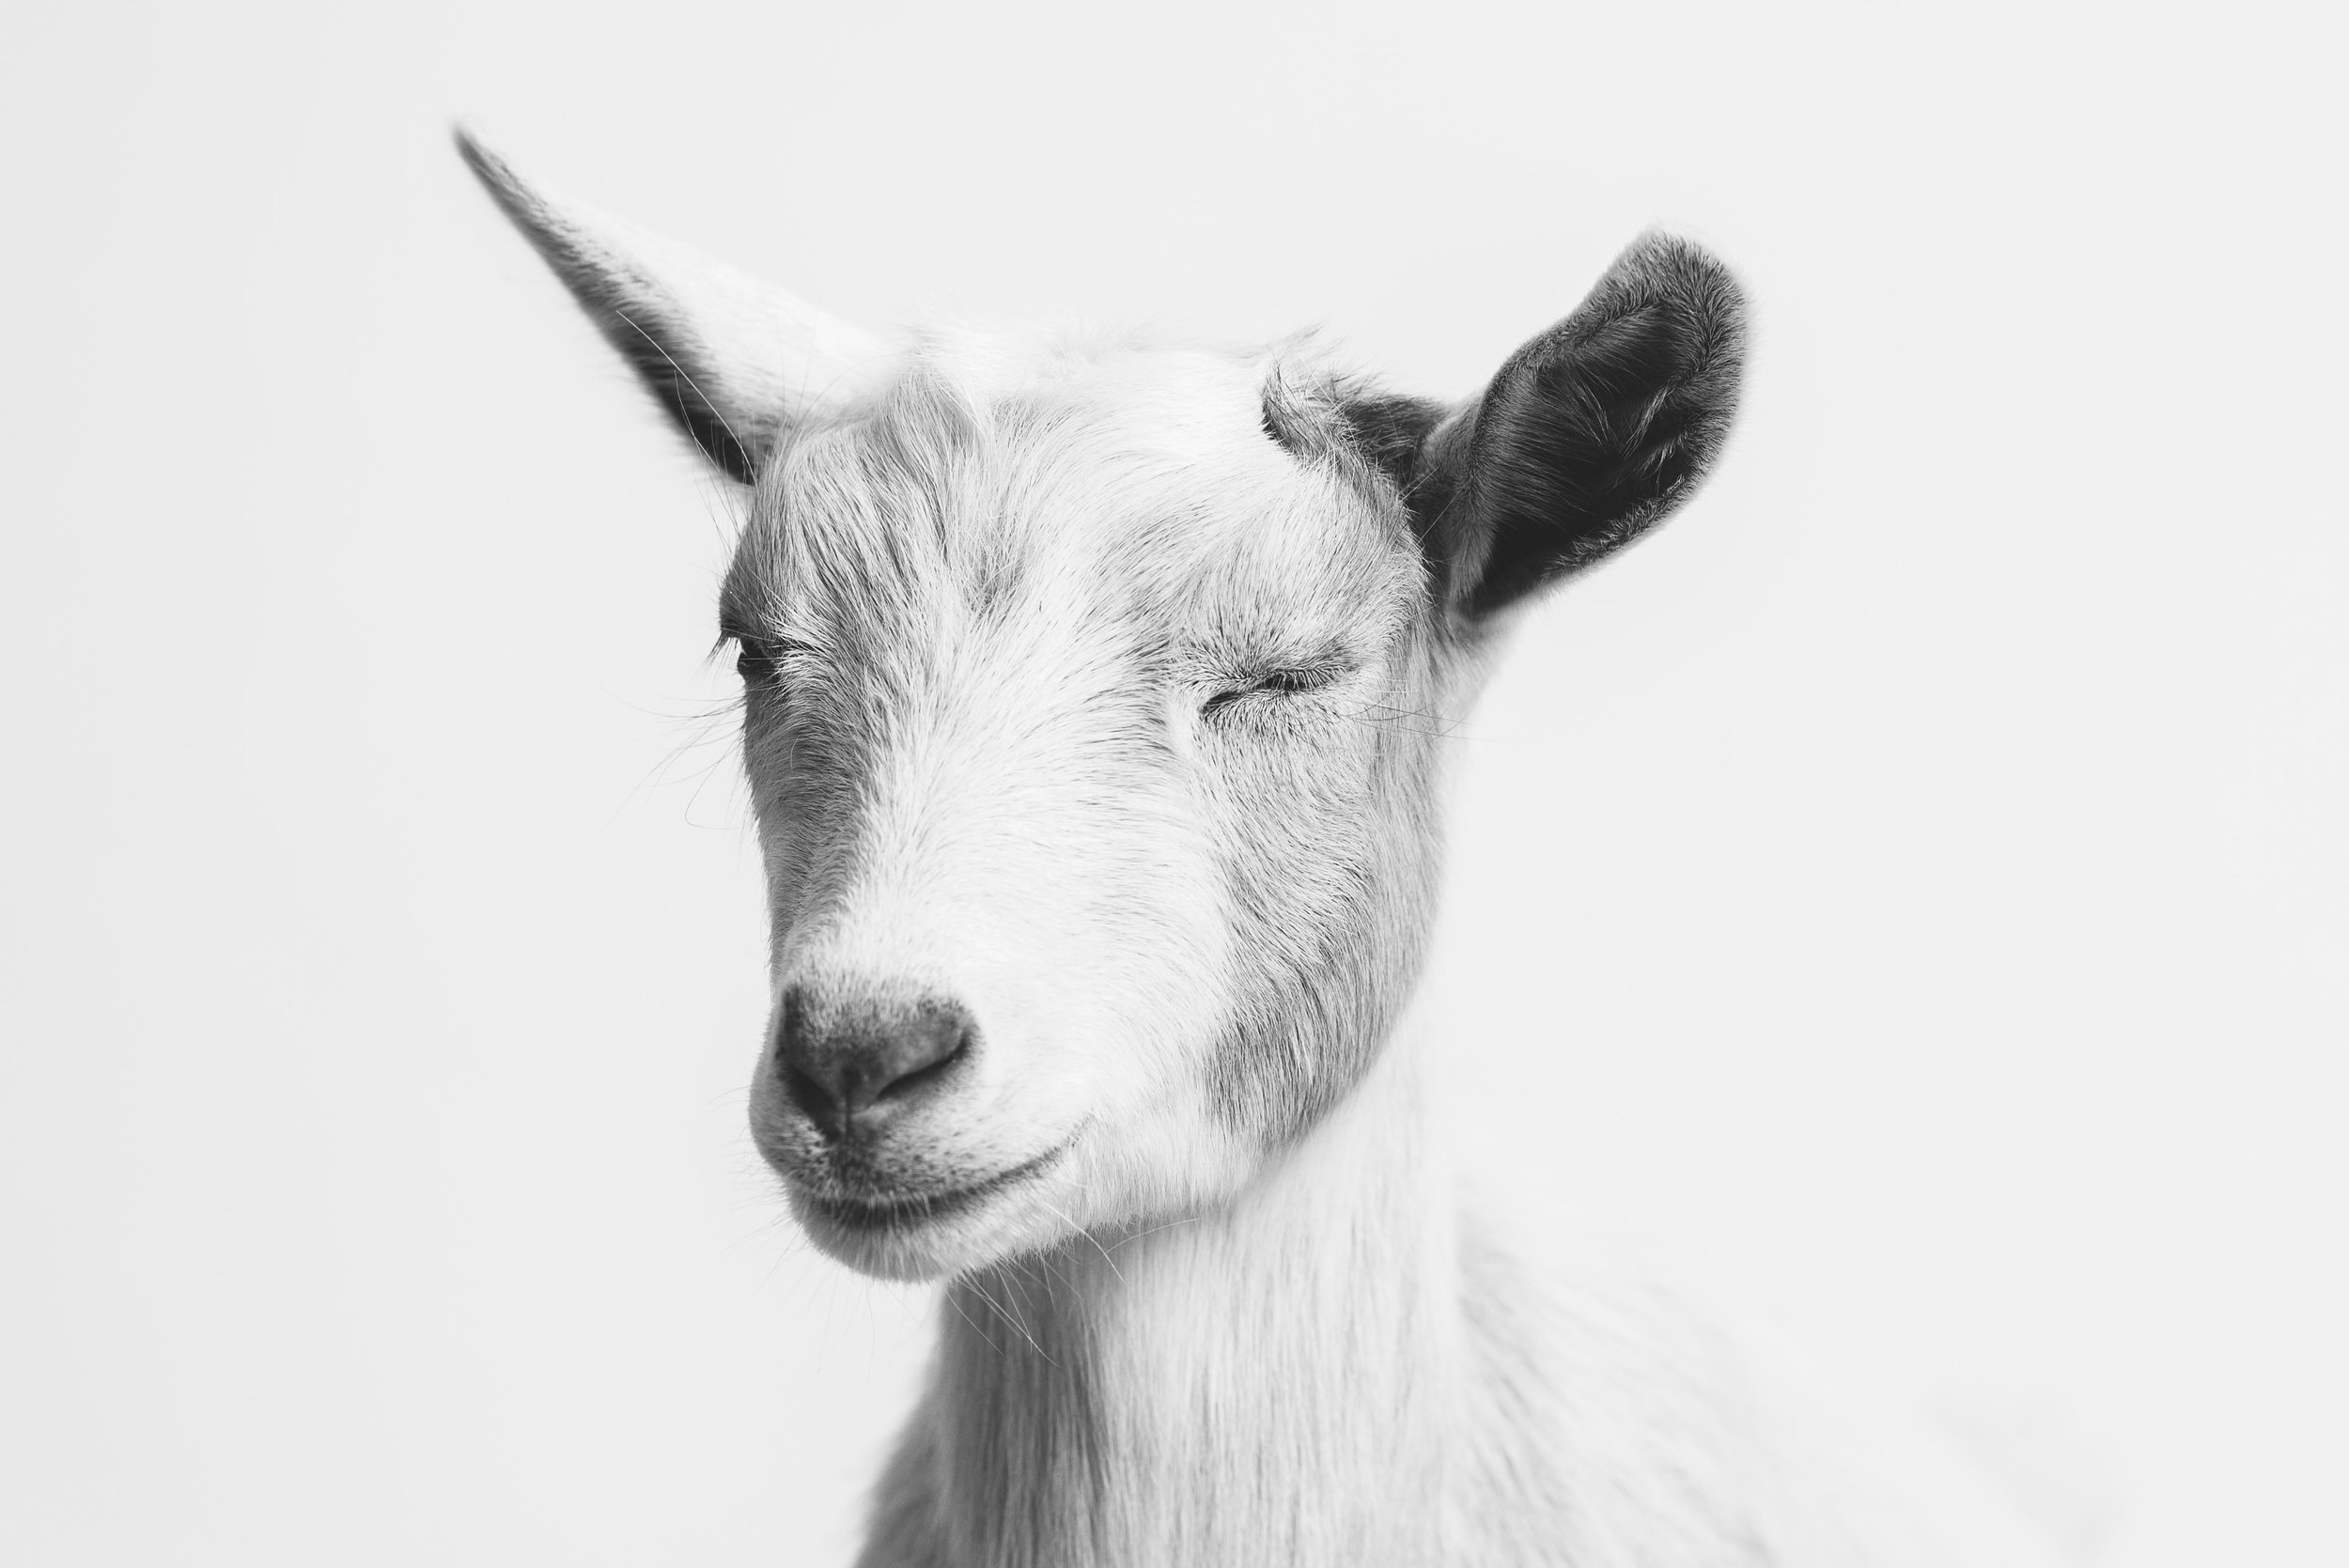 photos of goats 